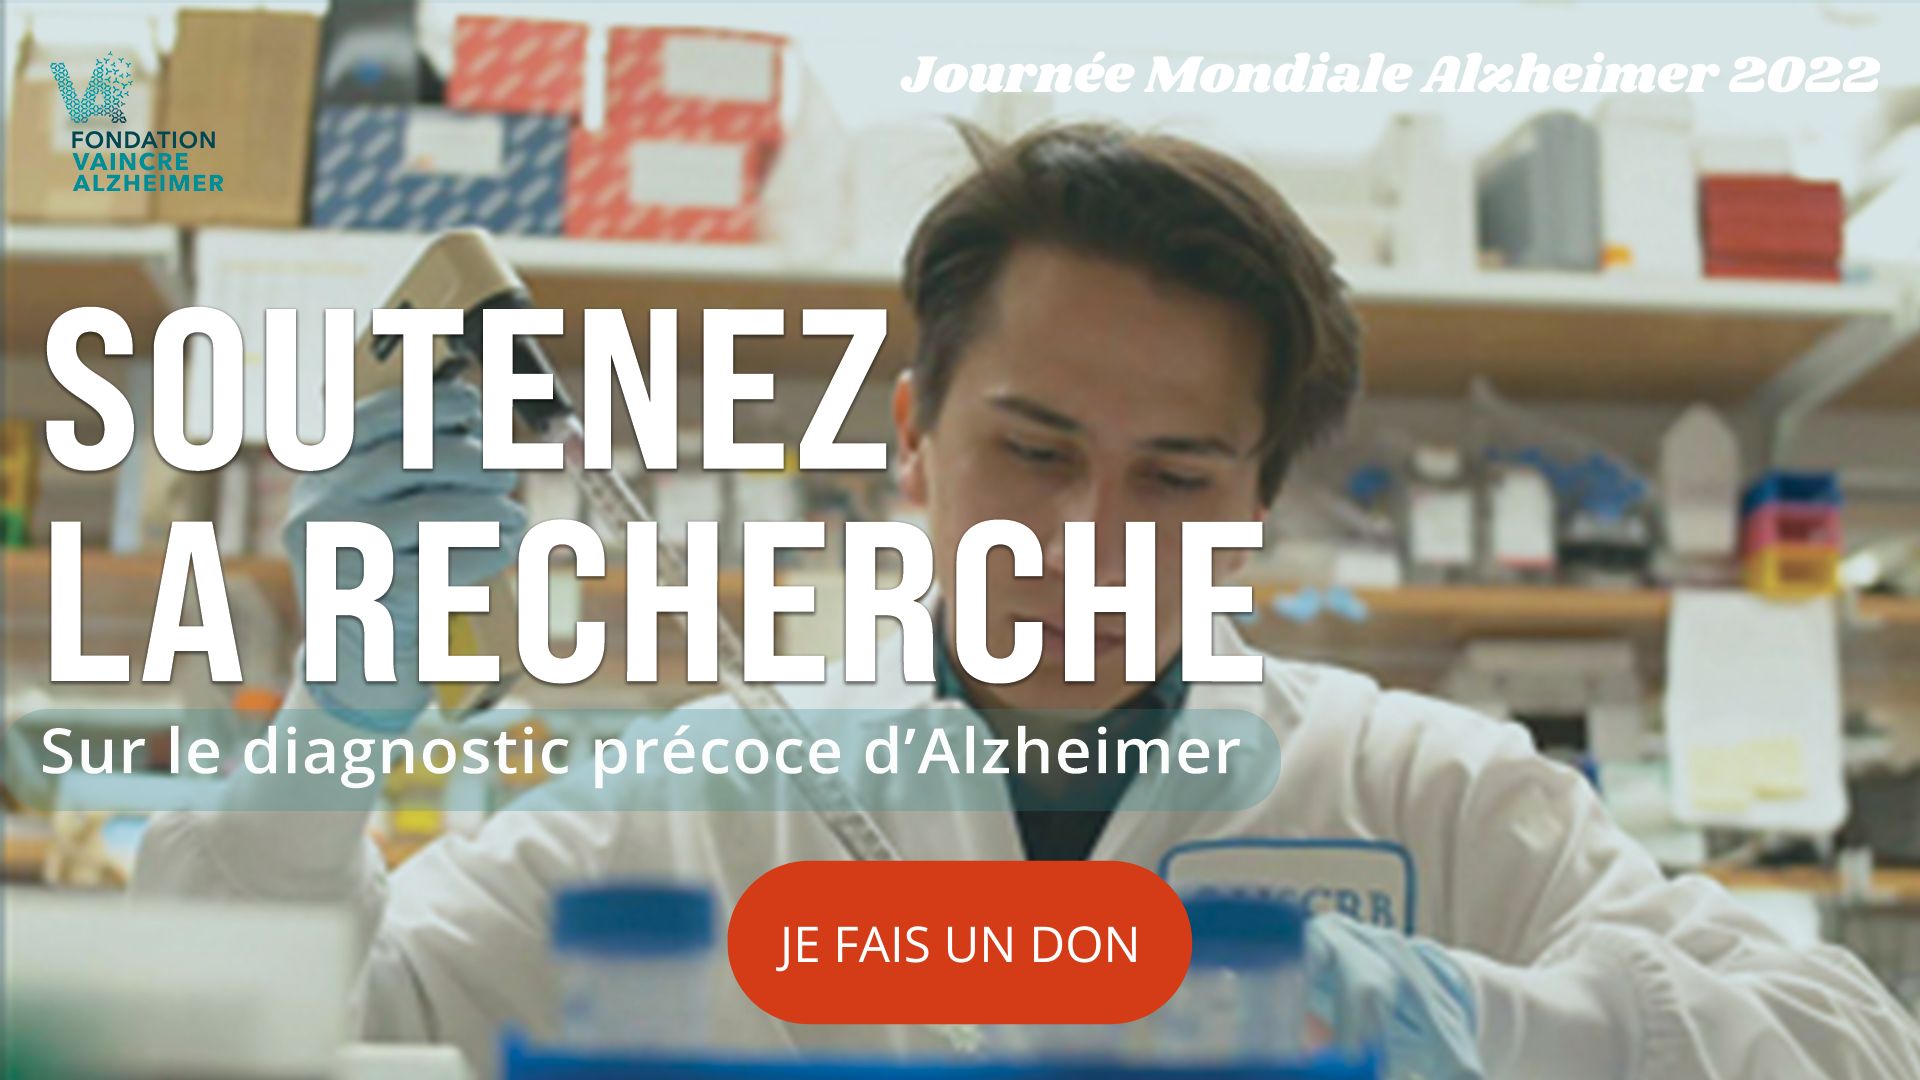 Journée Mondiale Alzheimer 2022, la recherche a besoin de vous